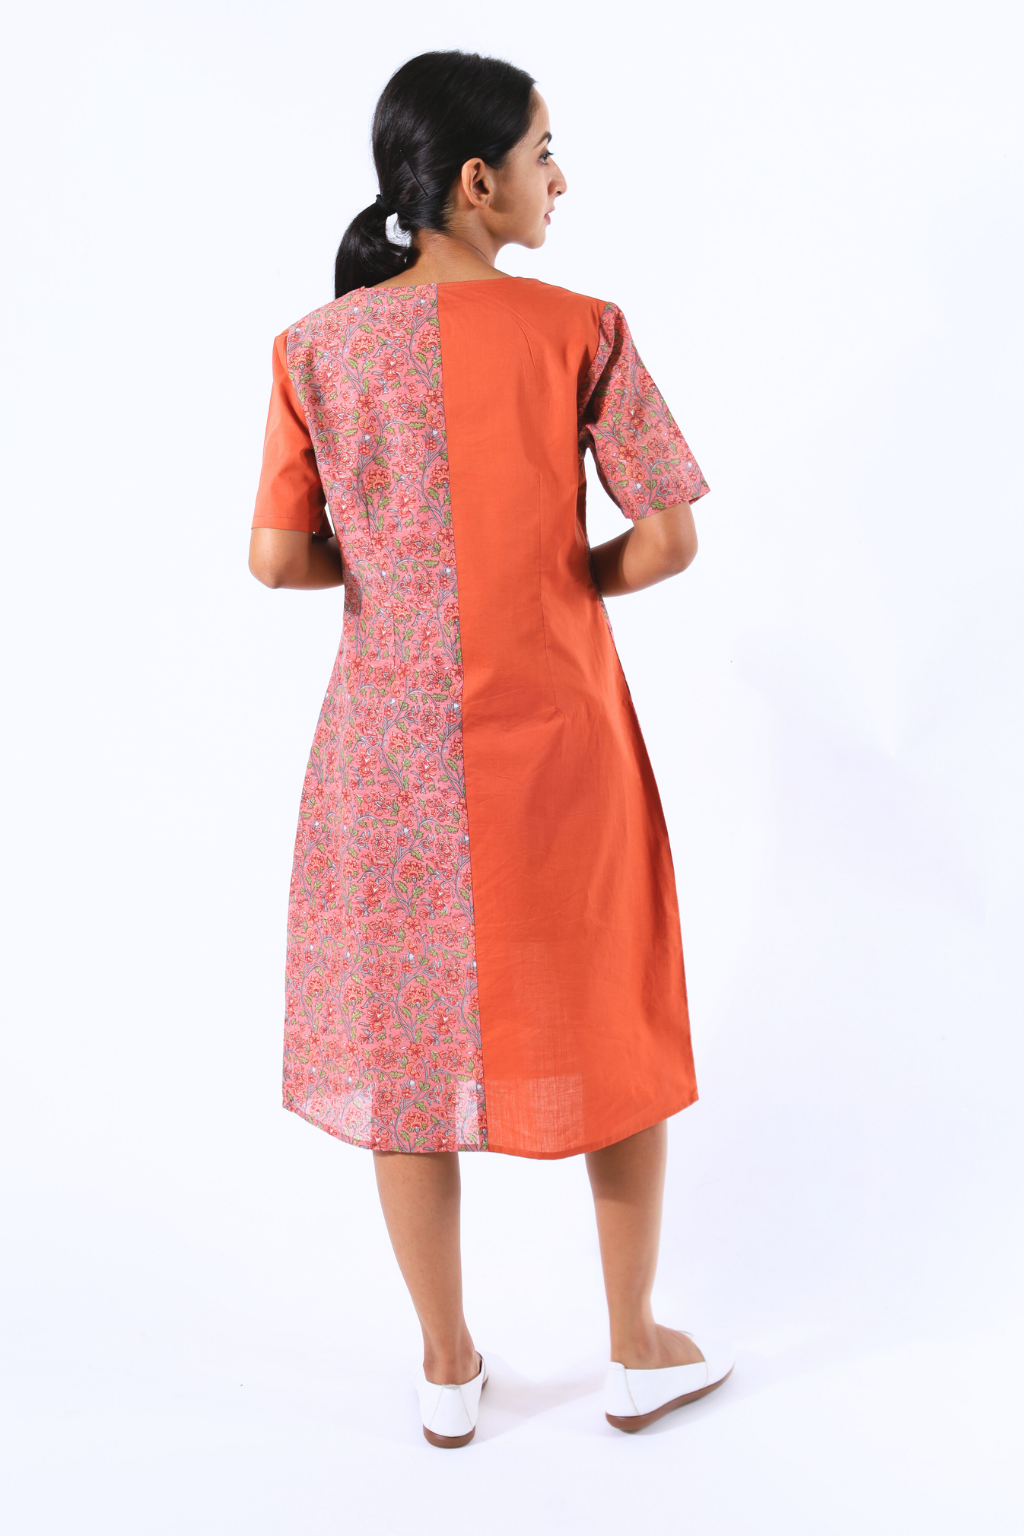 Saffron Front Yoke Block Printed Dress